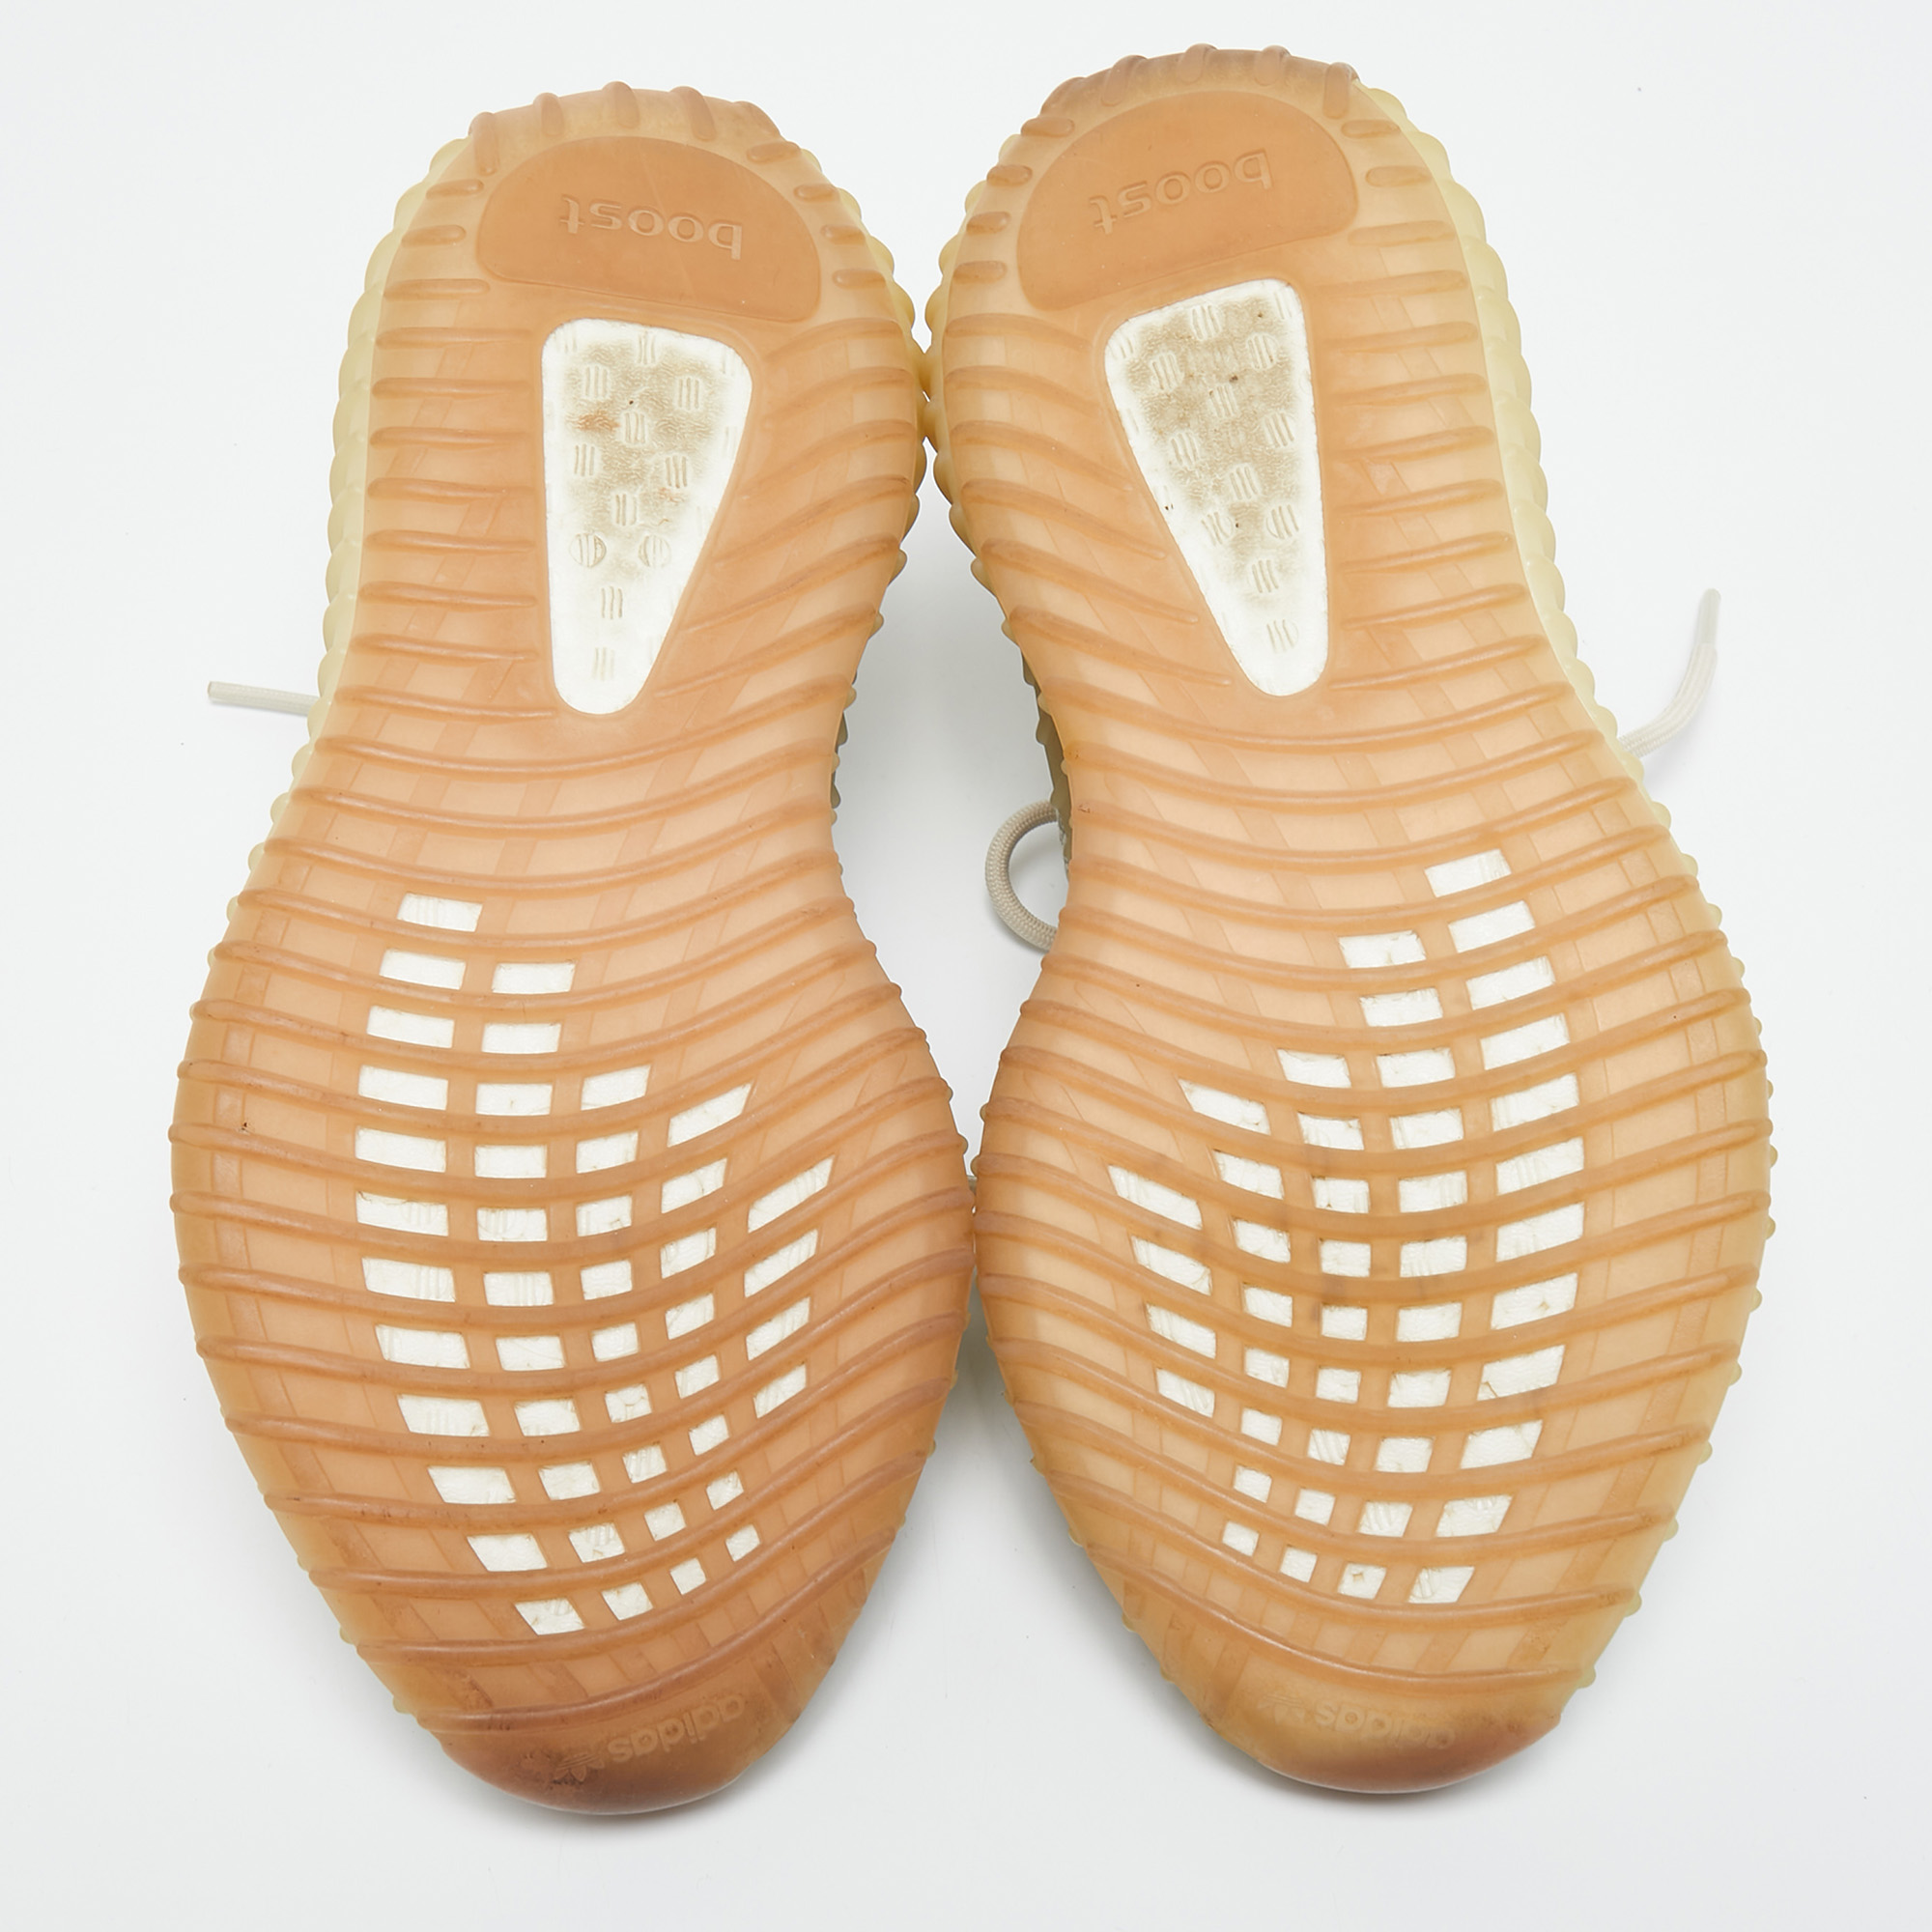 Yeezy X Adidas Beige Fabric Boost 350 V2 Yeshaya Sneakers Size 41 1/3